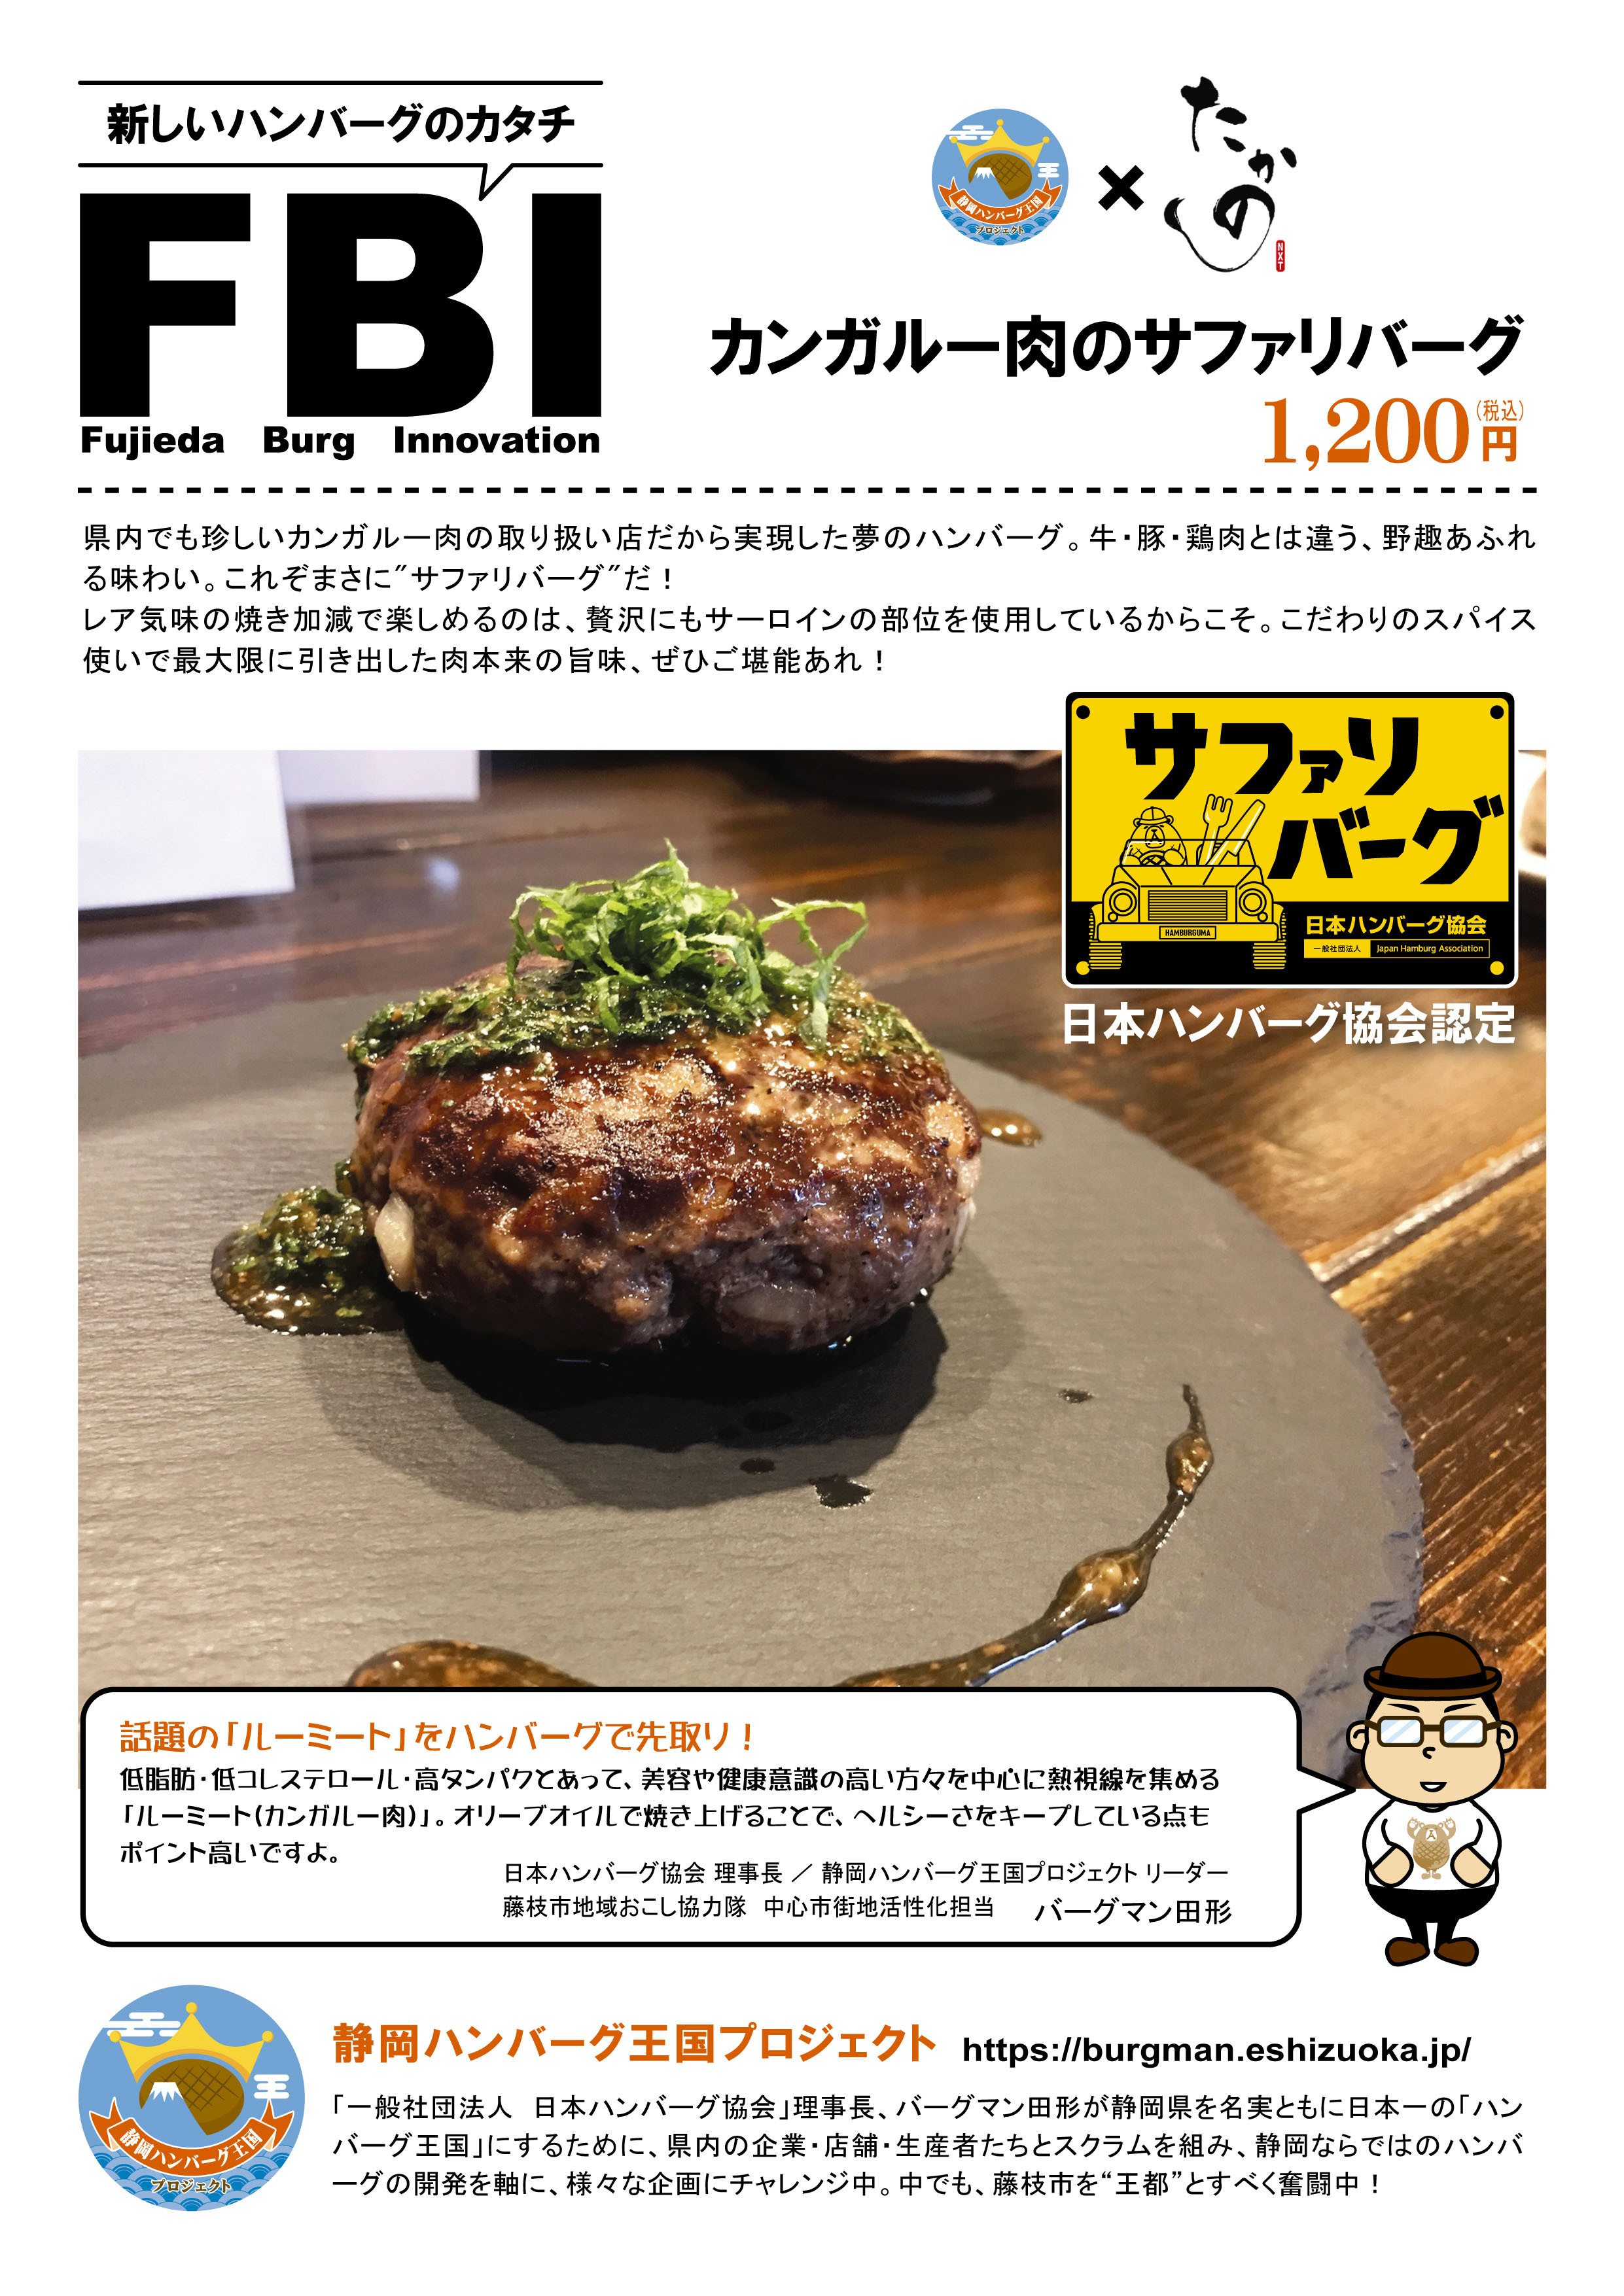 静岡ハンバーグ王国プロジェクト カンガルー肉のサファリバーグ 新発売